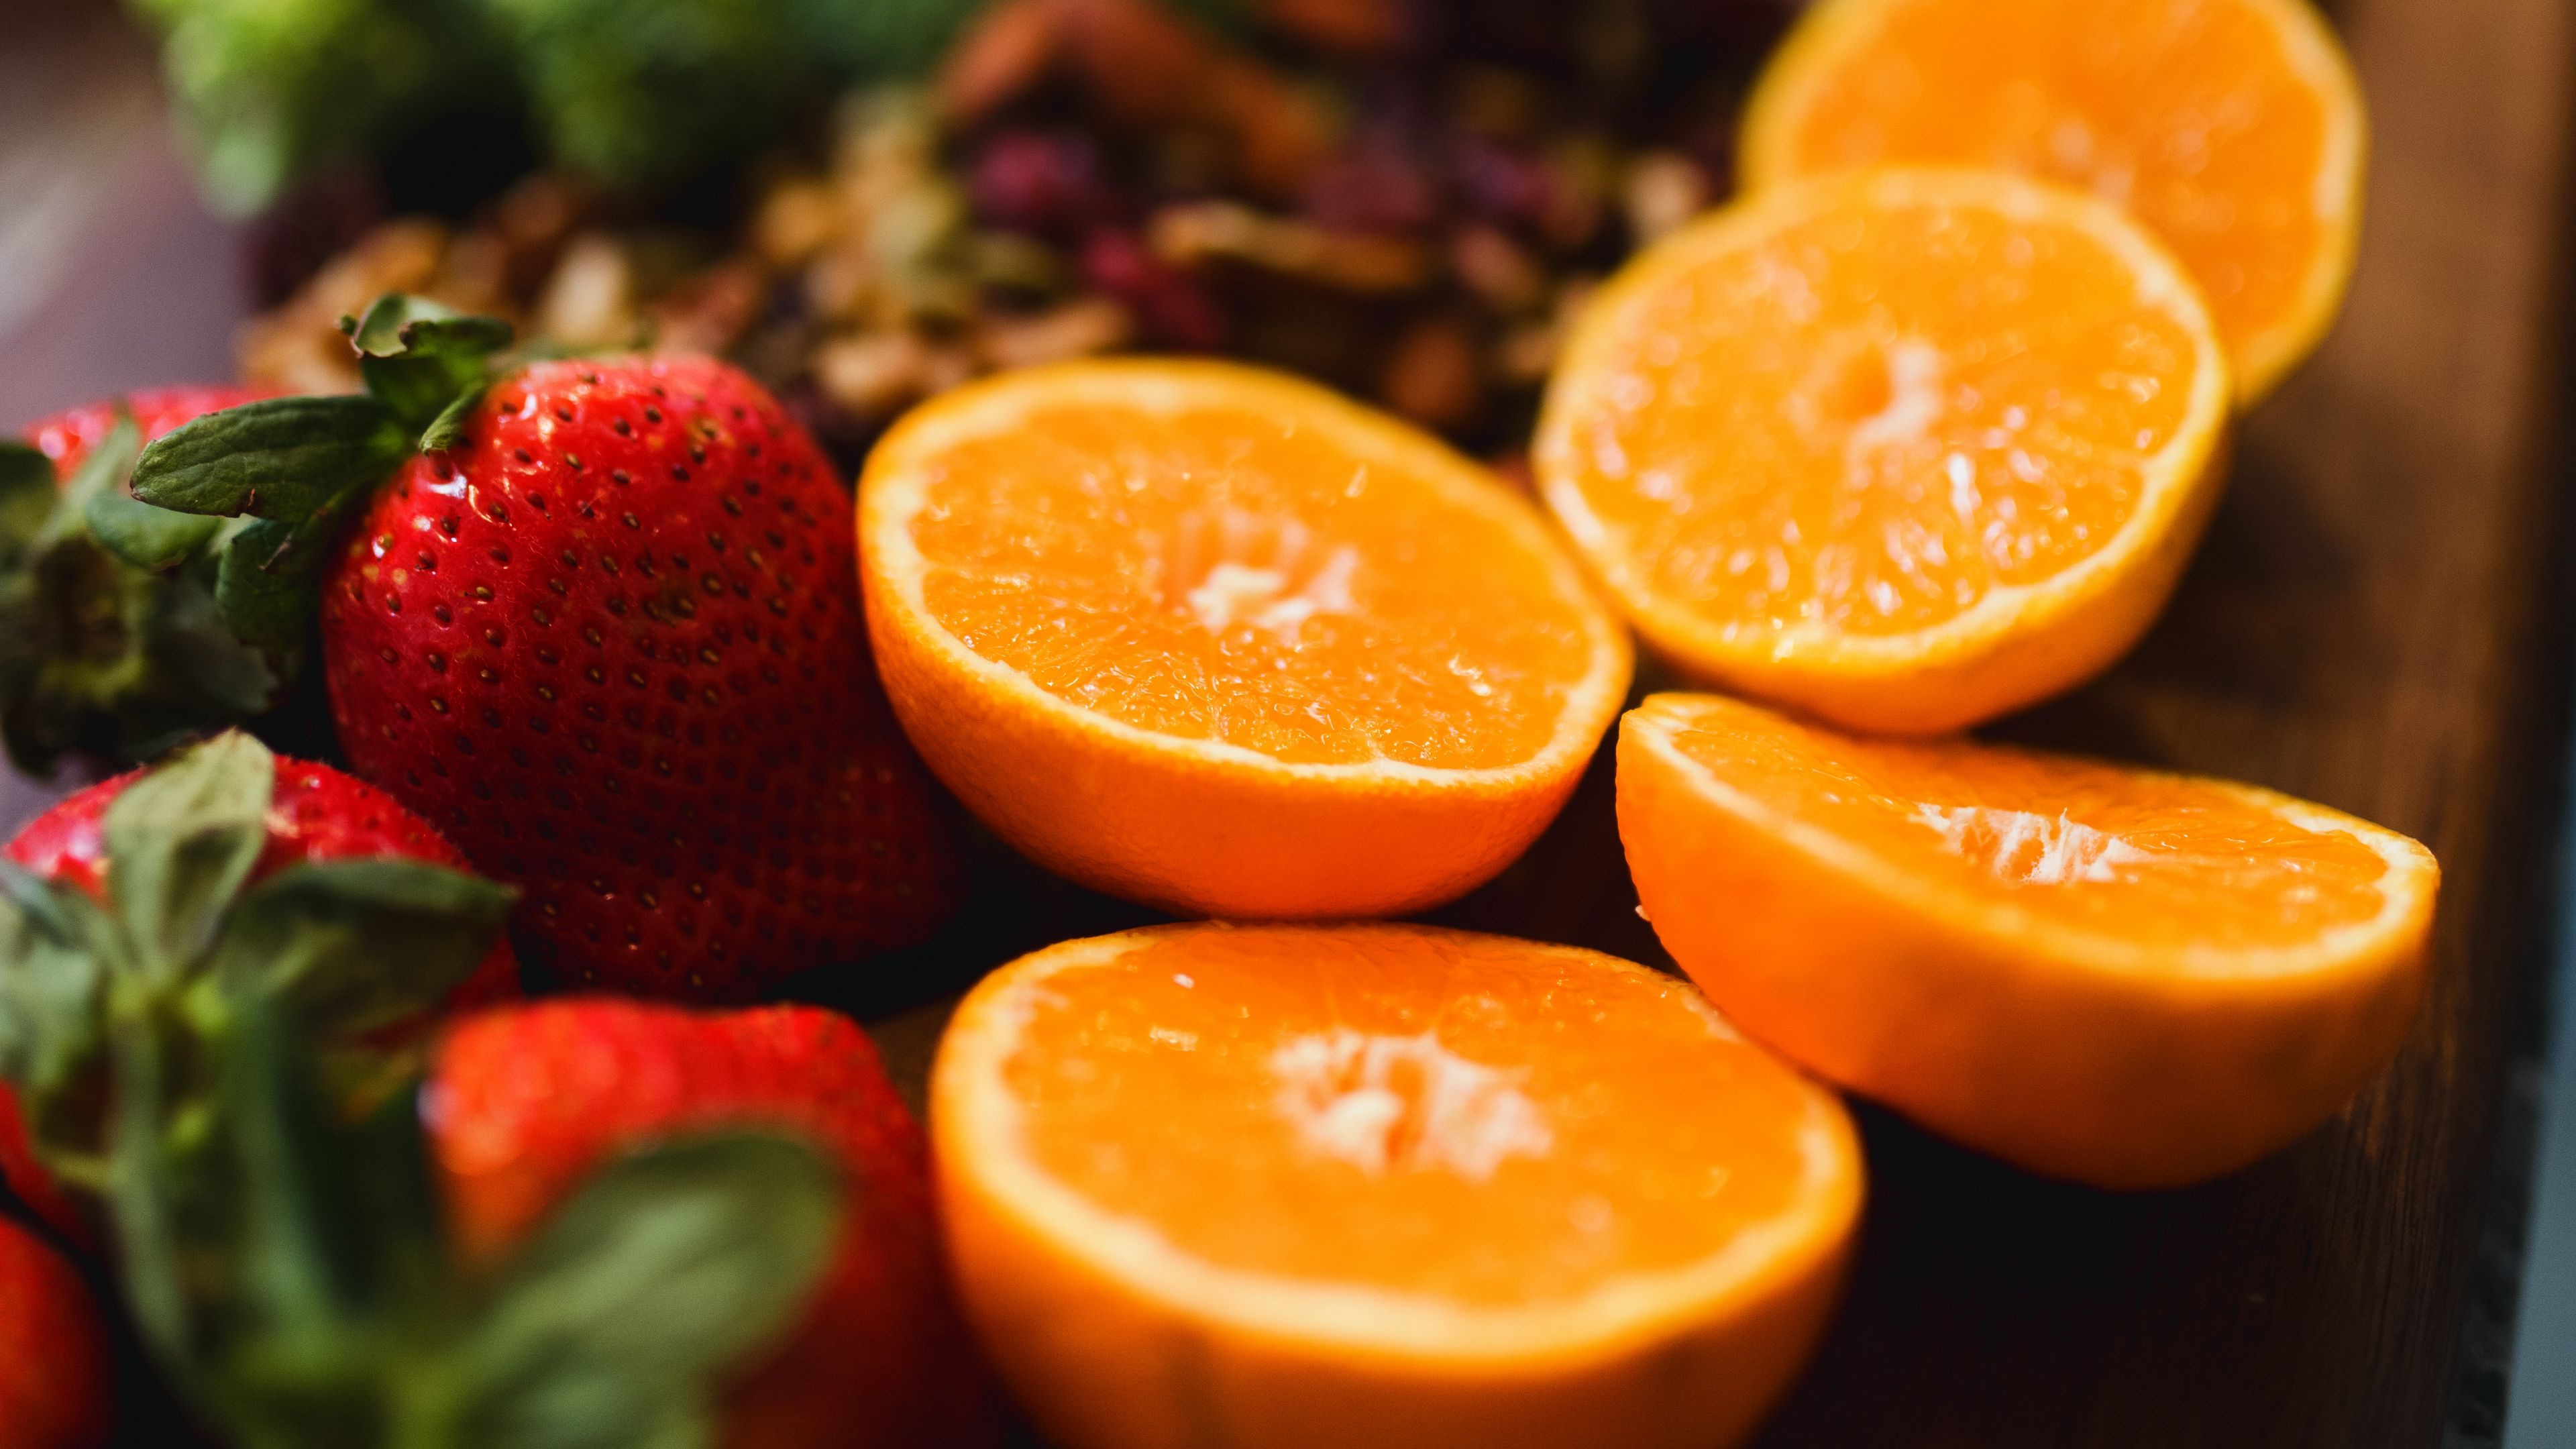 Оранжевые фрукты и ягоды